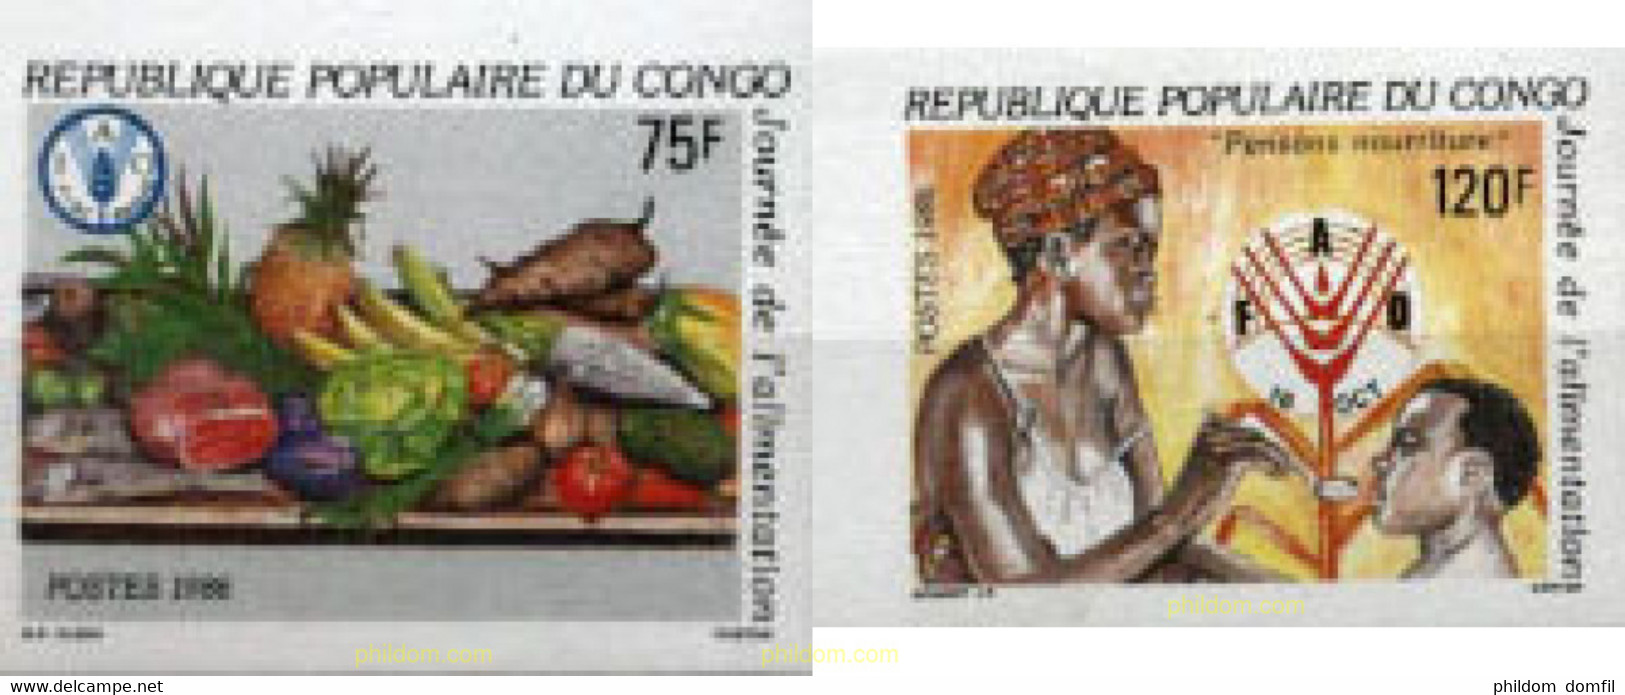 193986 MNH CONGO 1986 DIA DE LA ALIMENTACION - FDC